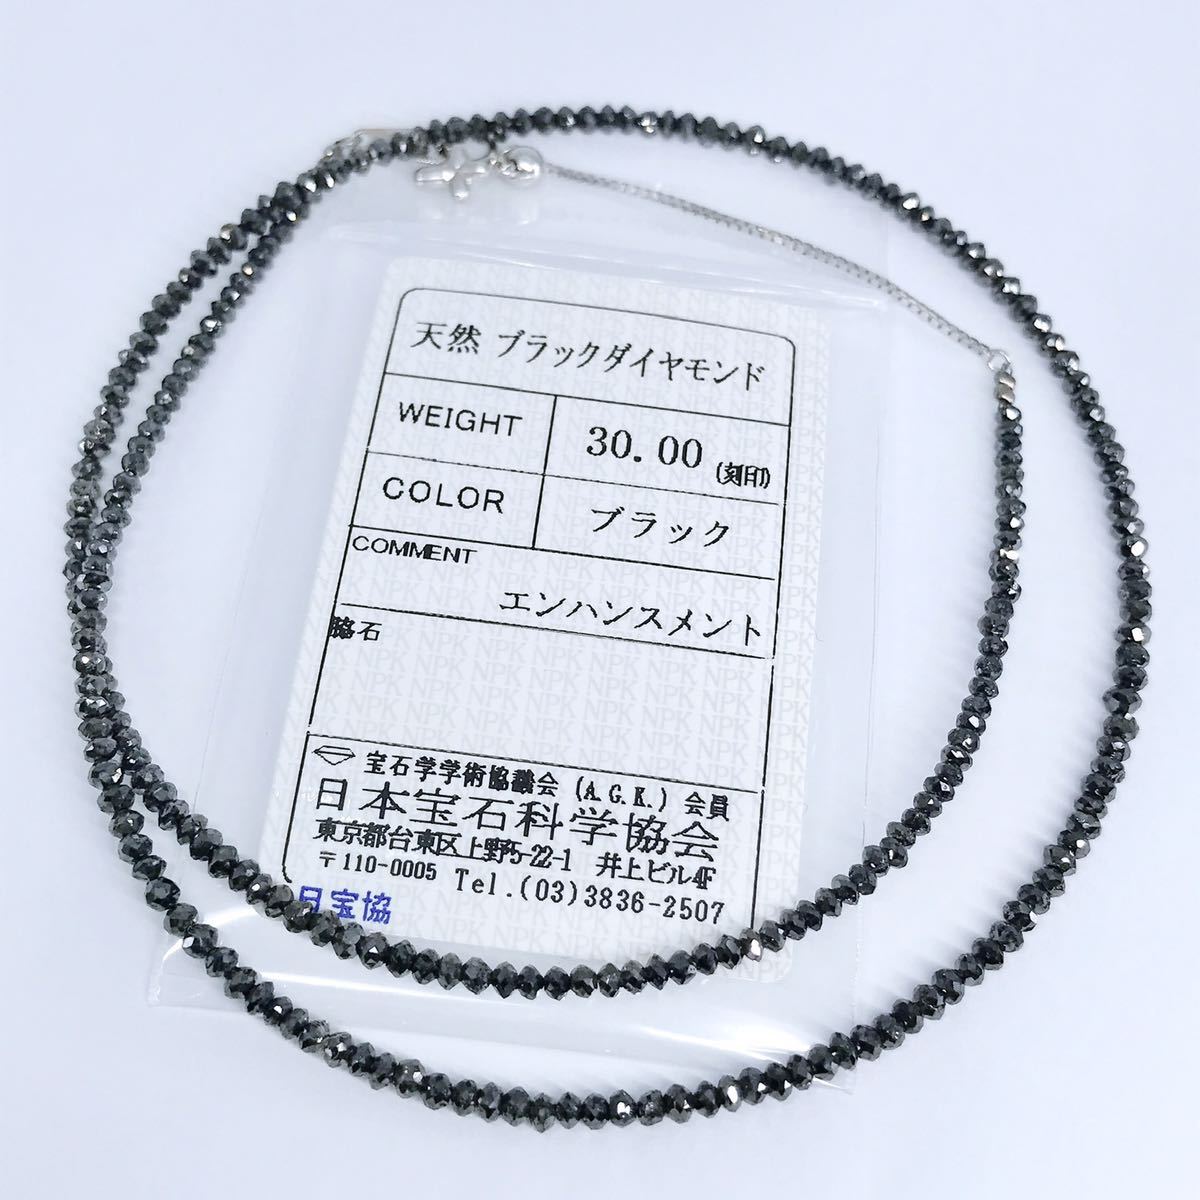 30 00ct ブラックダイヤモンド ネックレス K18WG ダイヤ 30ct メンズ